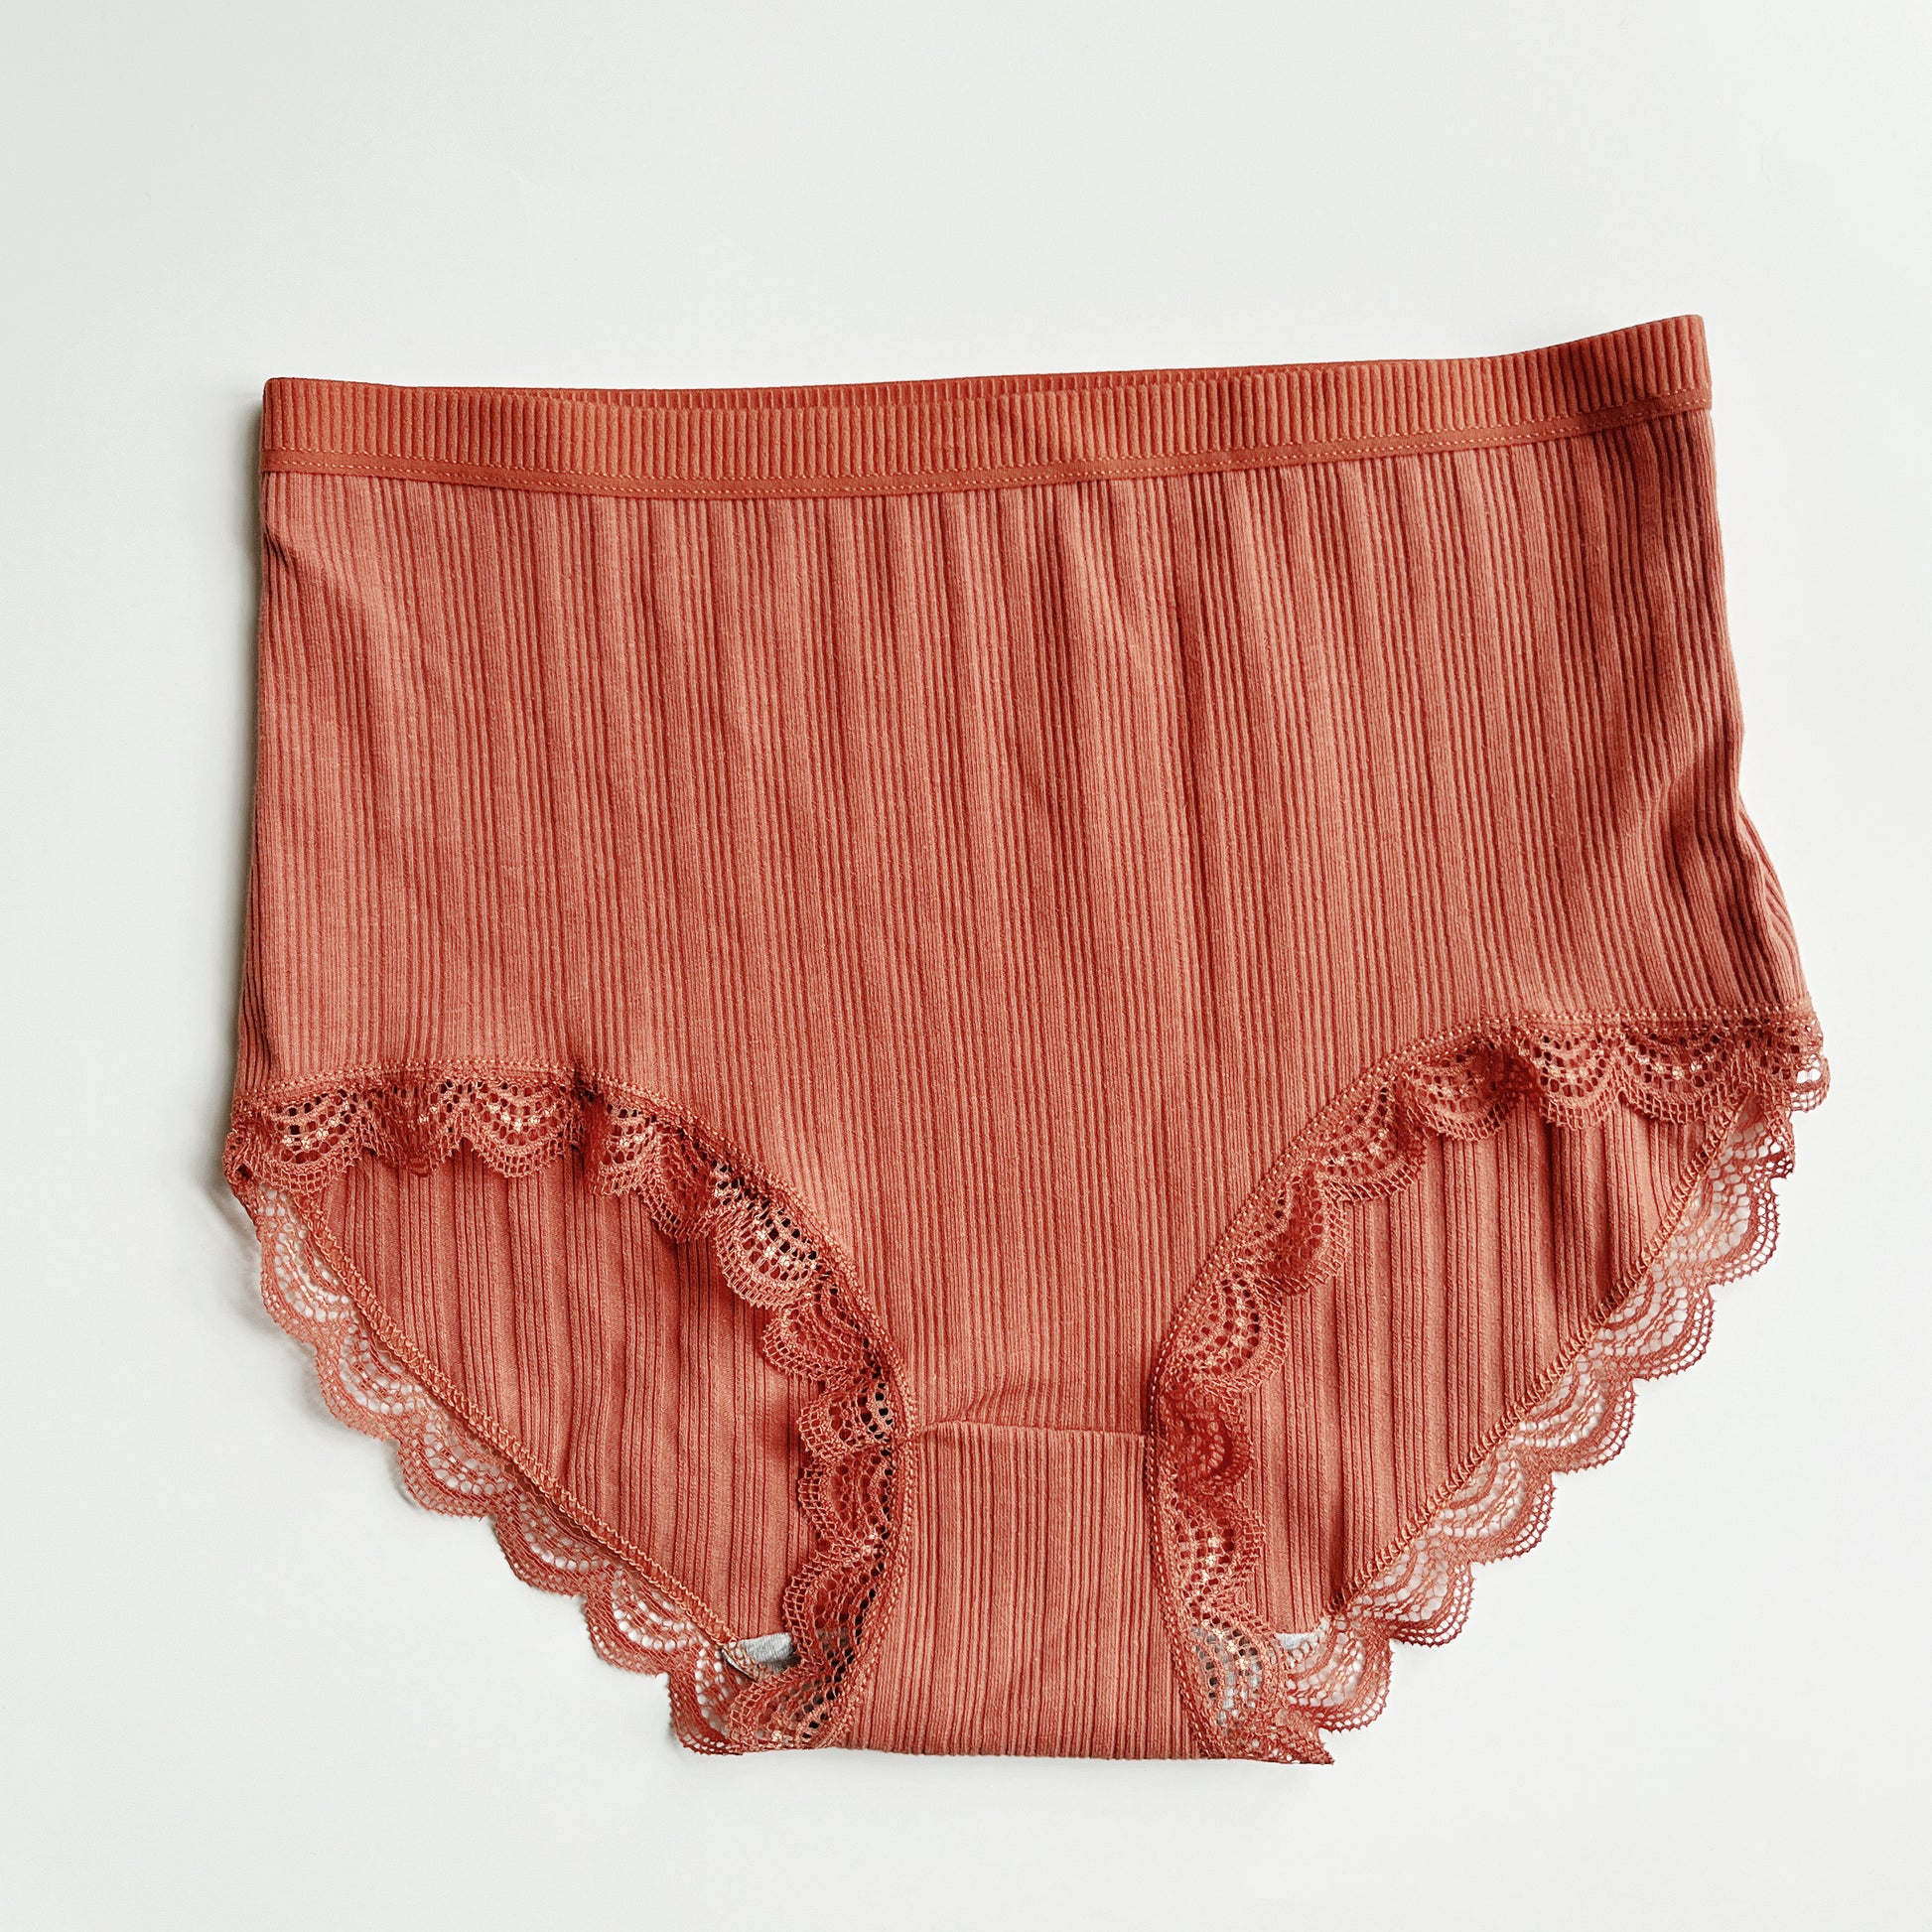 Transparent Hollow Cotton Panties Mid-rise Floral Lace Panty Women Underwear  1pc